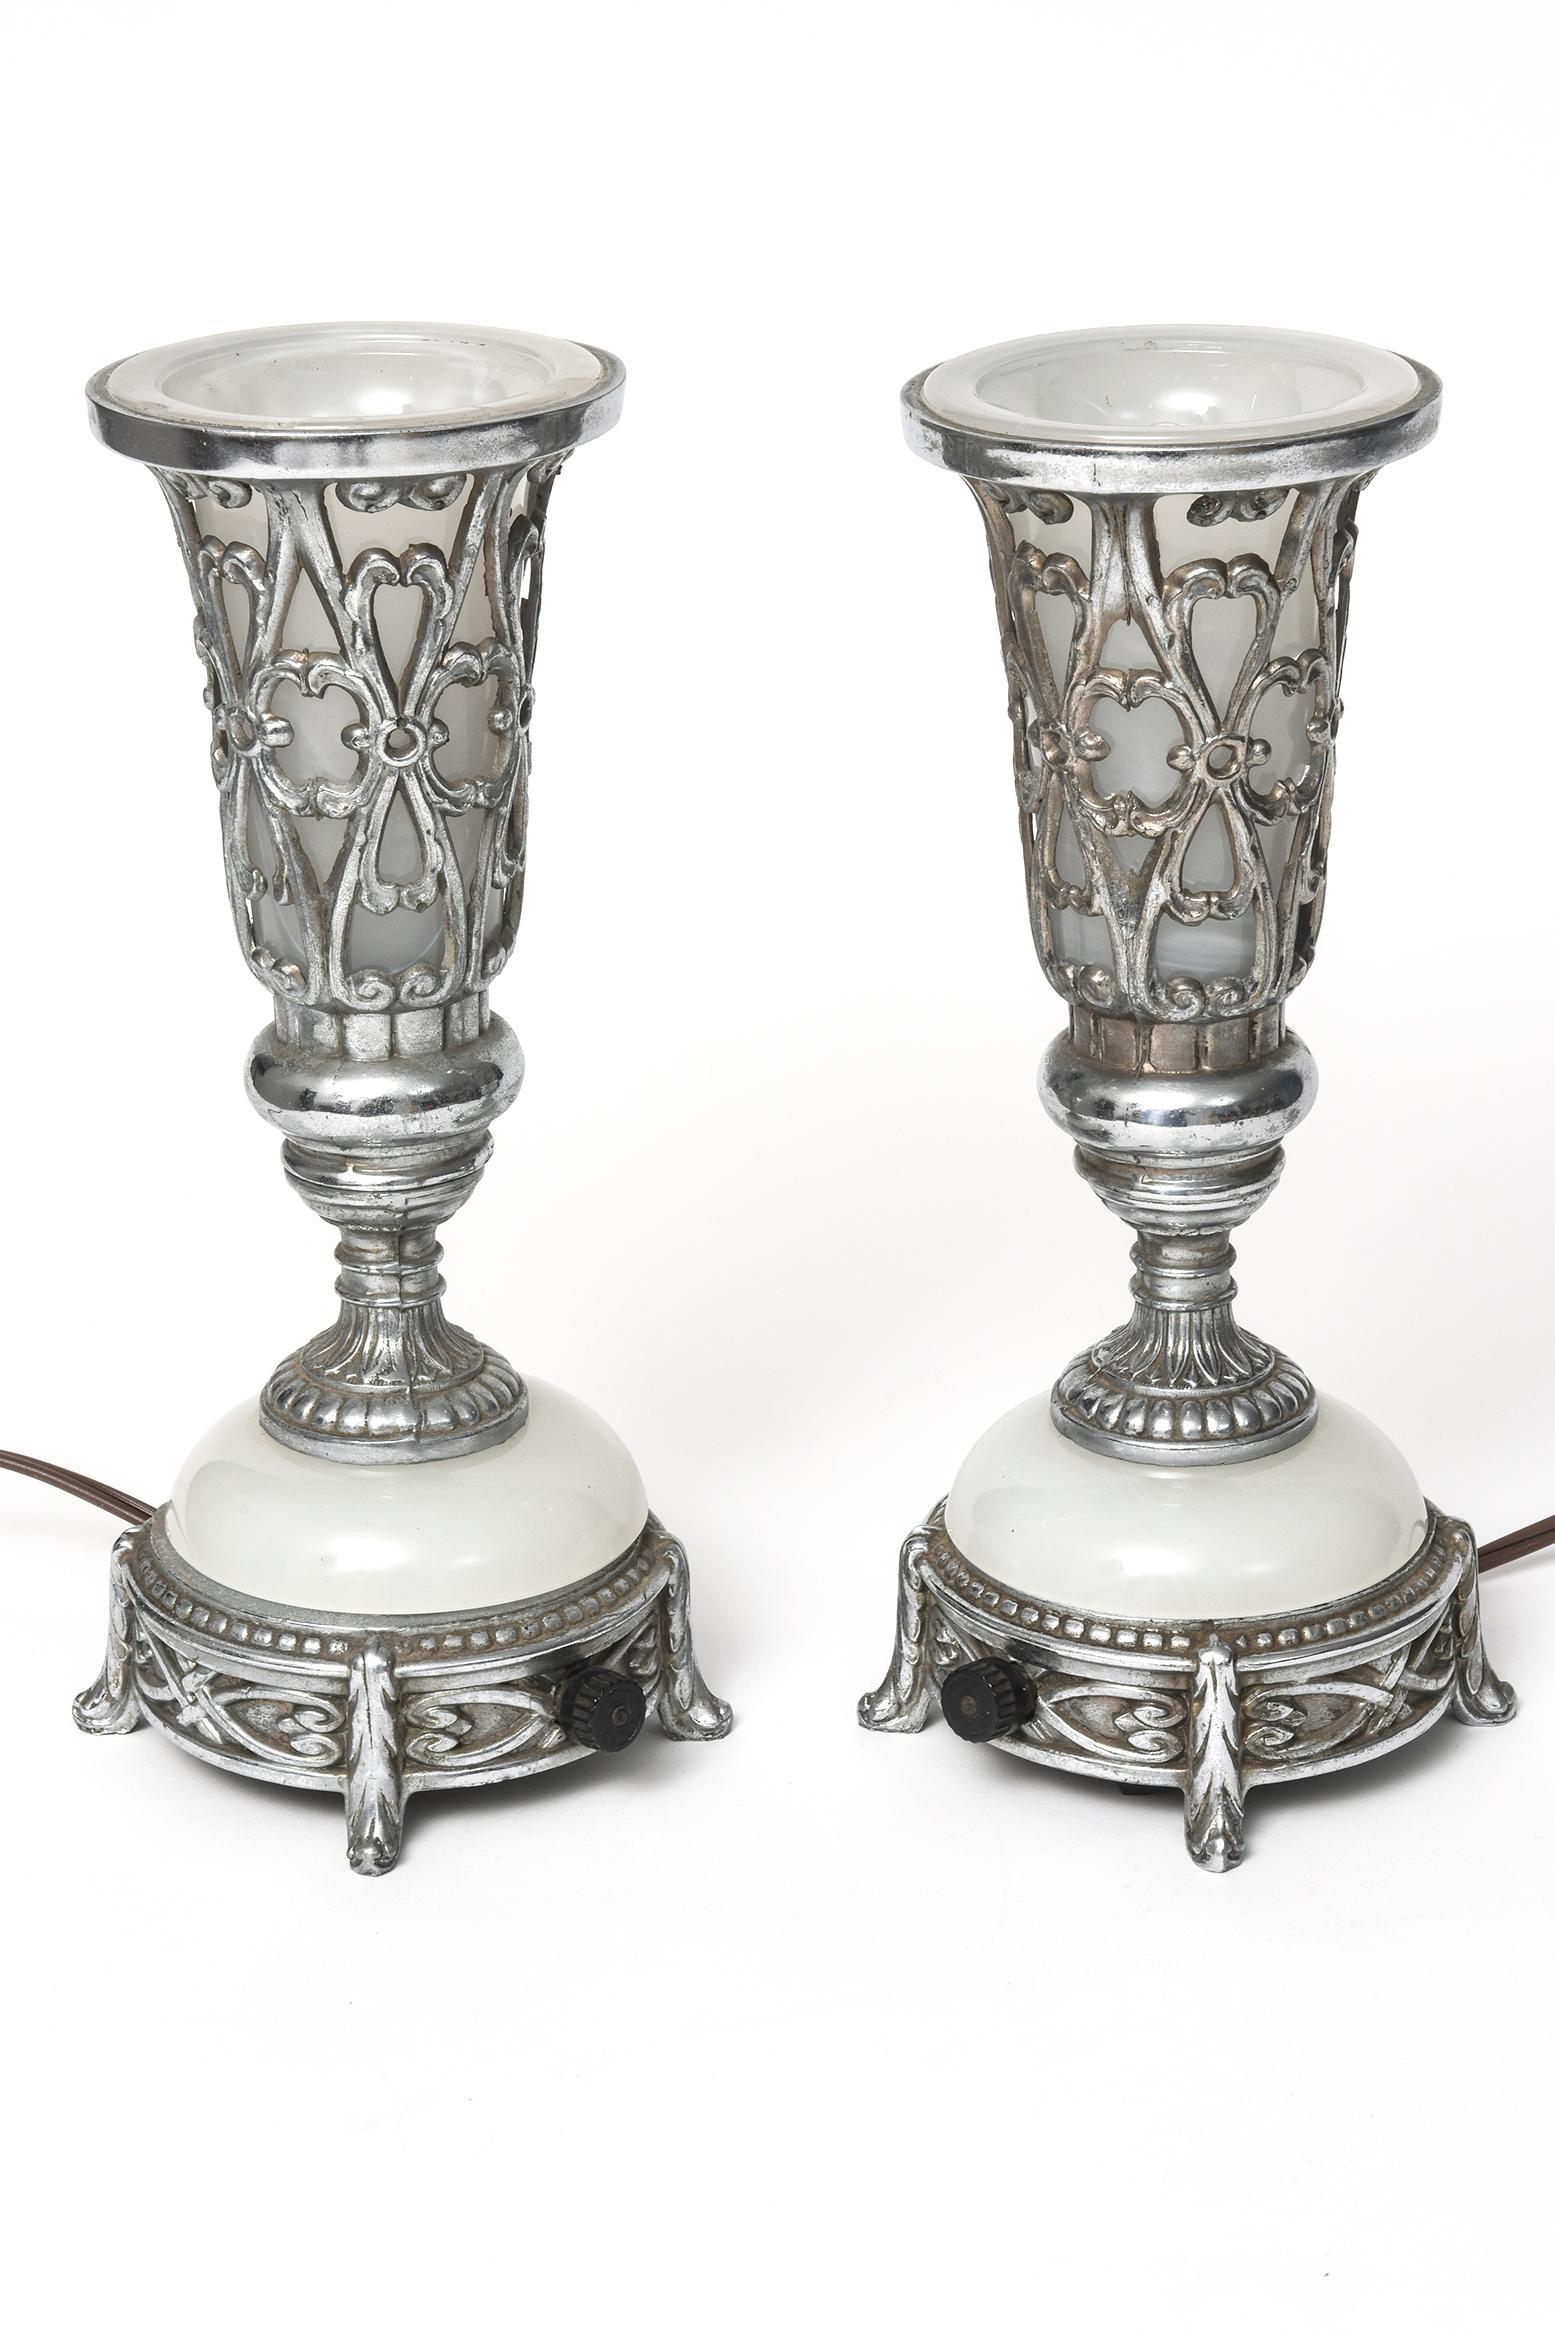 Seltenes Paar Art Deco Tisch- oder Kaminsimslampen - perfekt für gedämpftes romantisches Licht oder als Nachtlicht.
Diese Lampen sind aus verchromtem Metall und Milchglas gefertigt. Der obere Teil über dem weißen, tulpenförmigen Glasteil ist